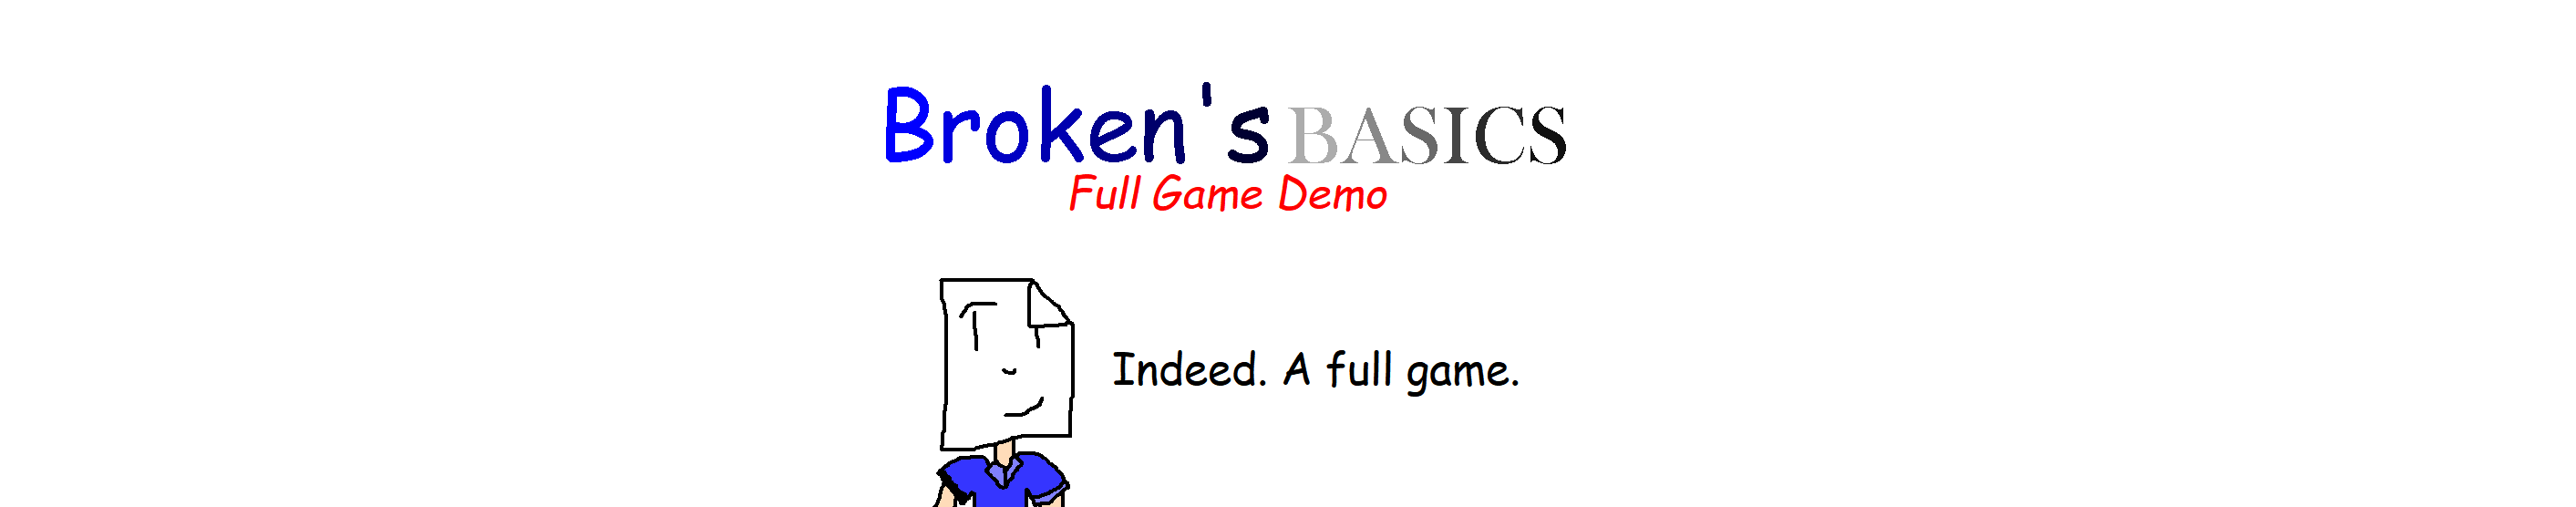 Broken's Basics Full Game Demo 1.2